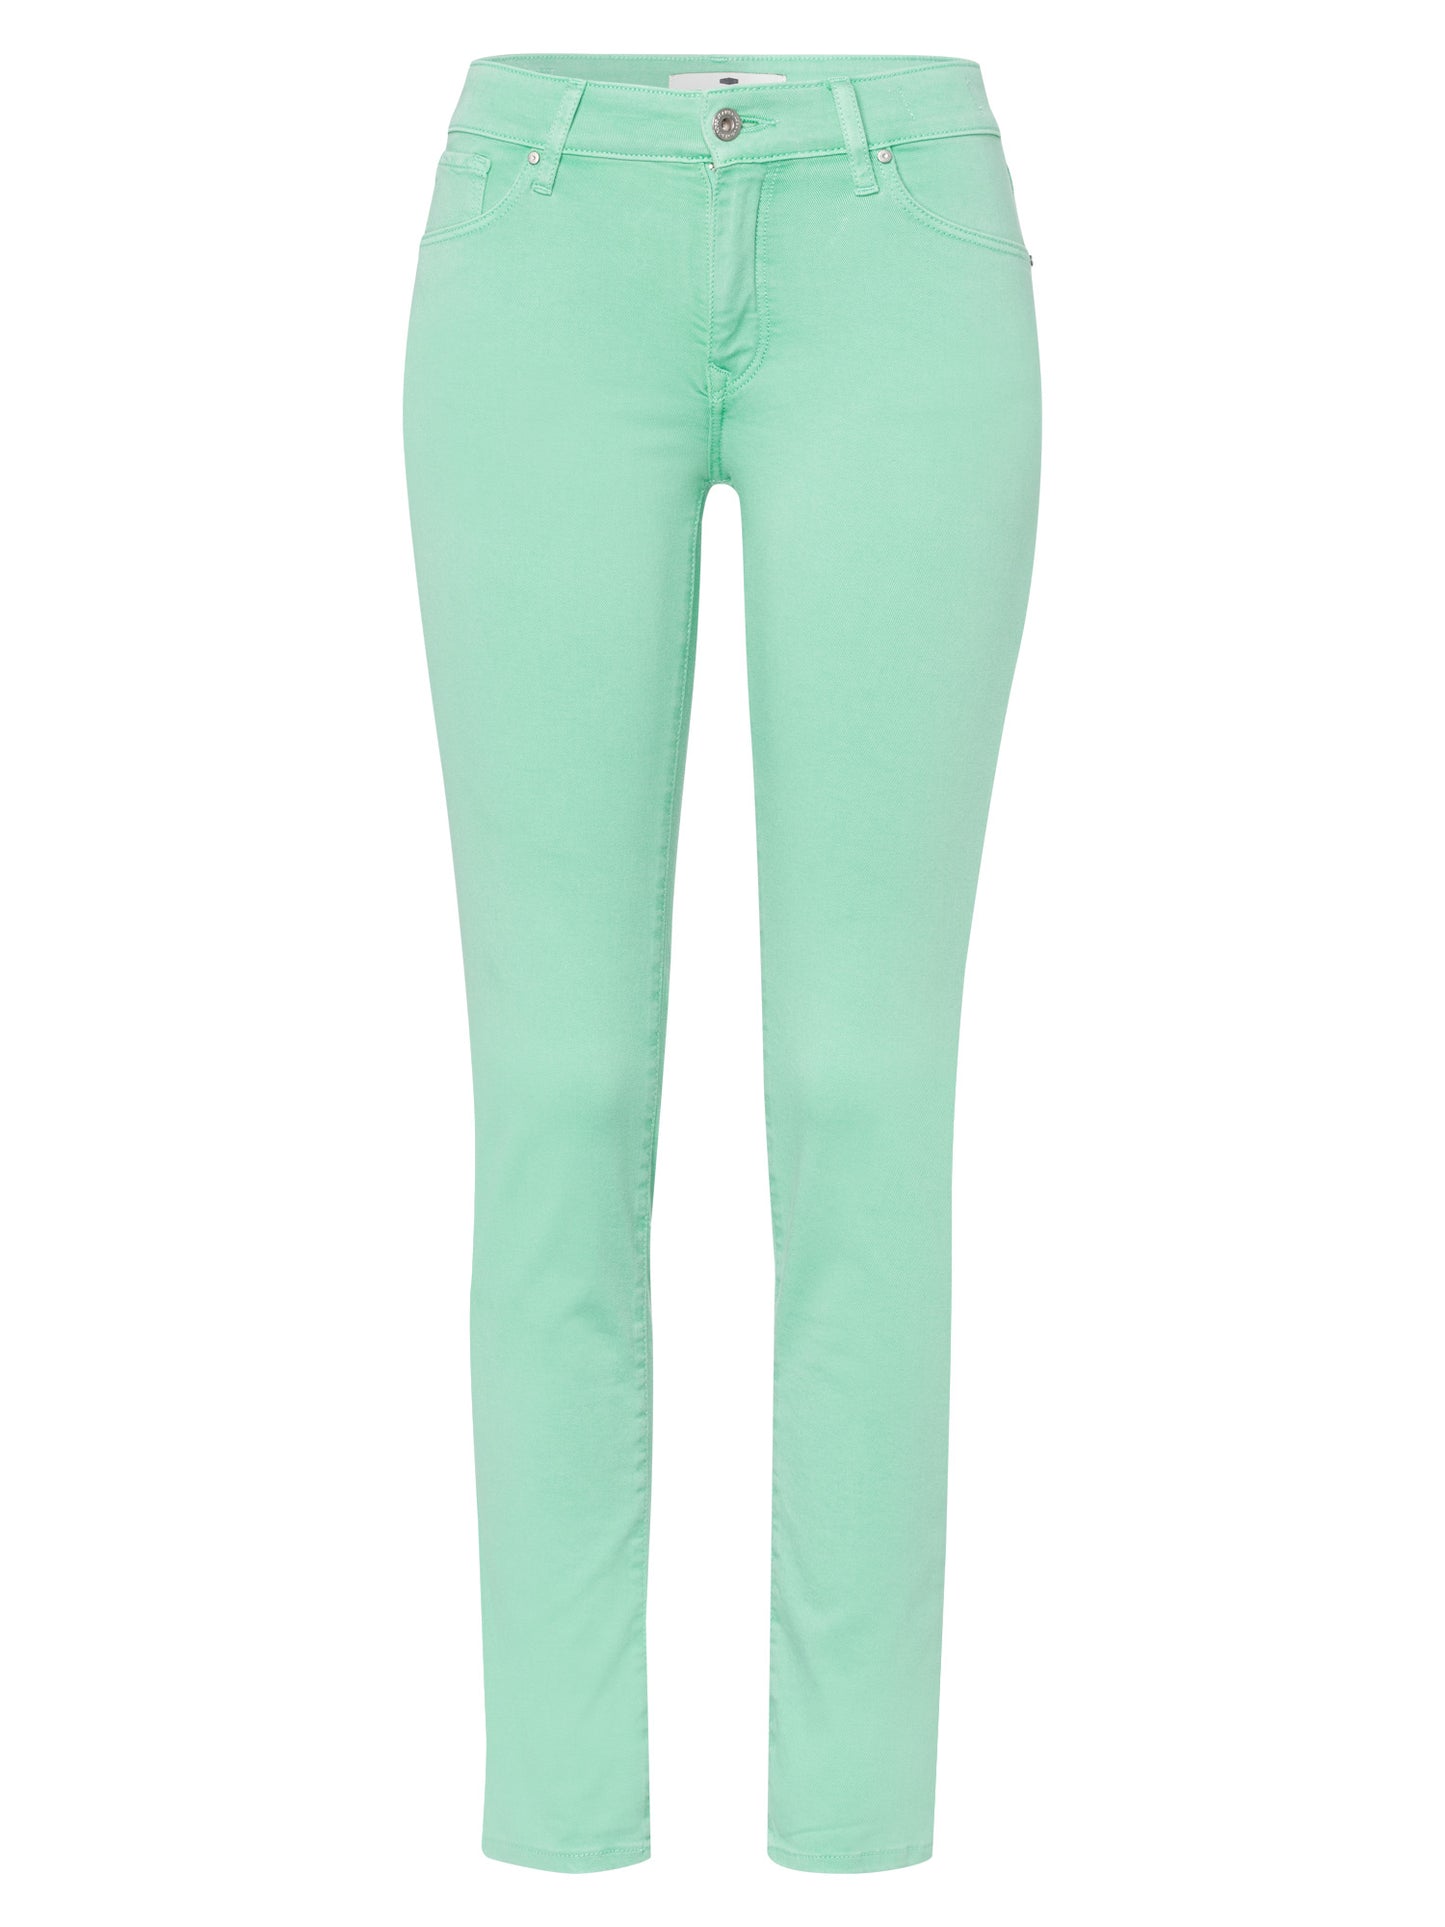 Anya women's jeans slim fit high waist light green